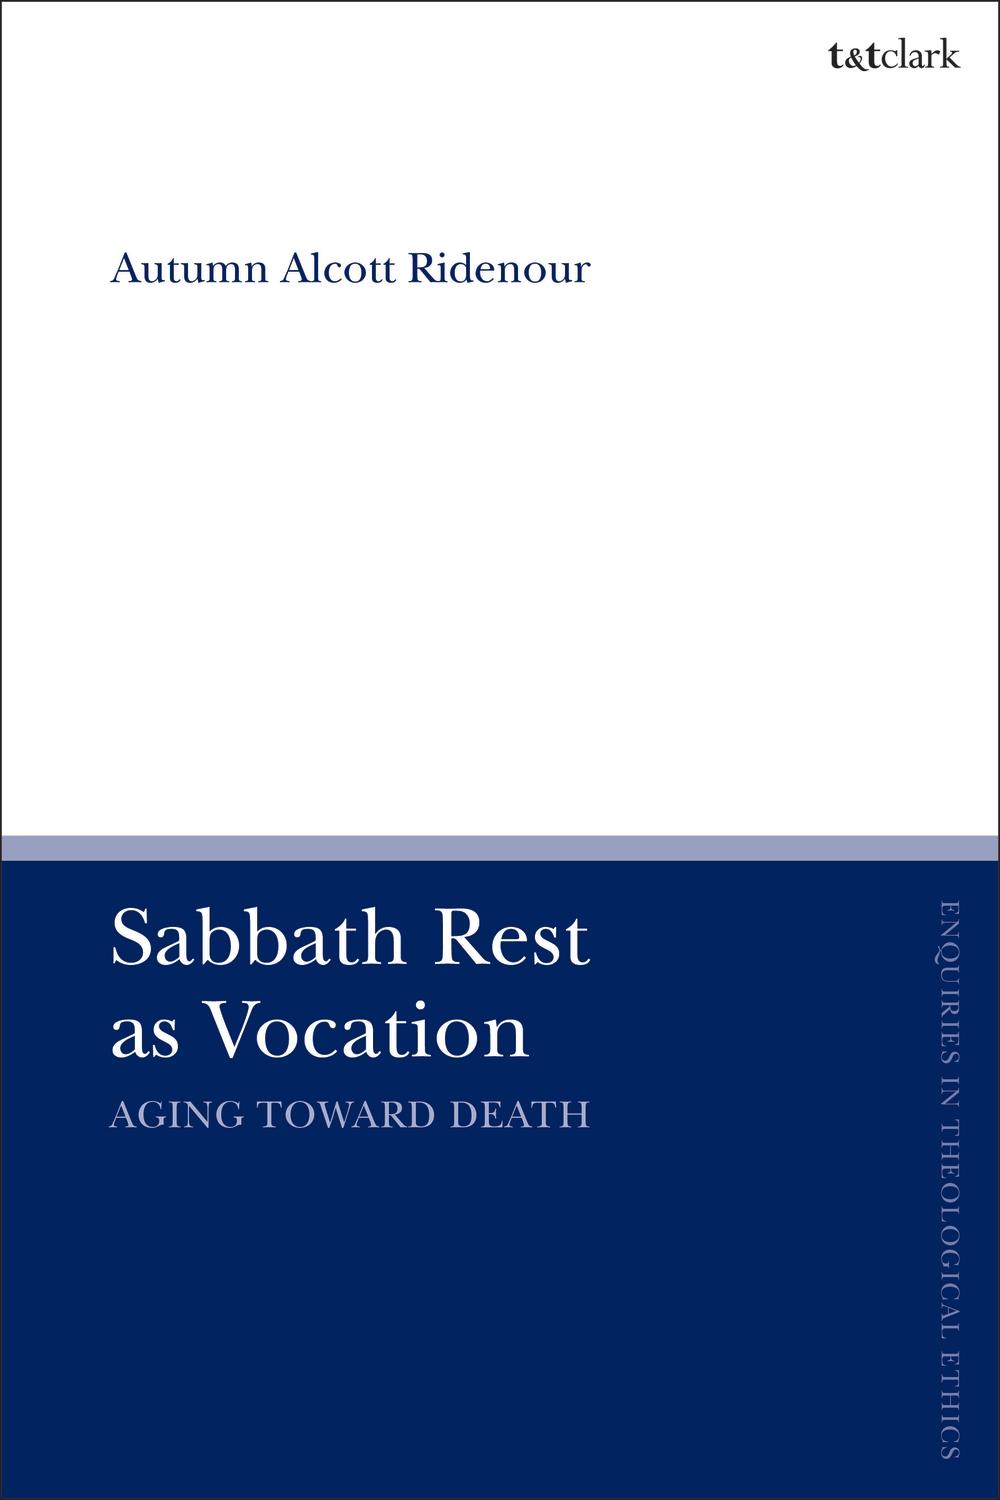 Sabbath Rest as Vocation - Autumn Alcott Ridenour